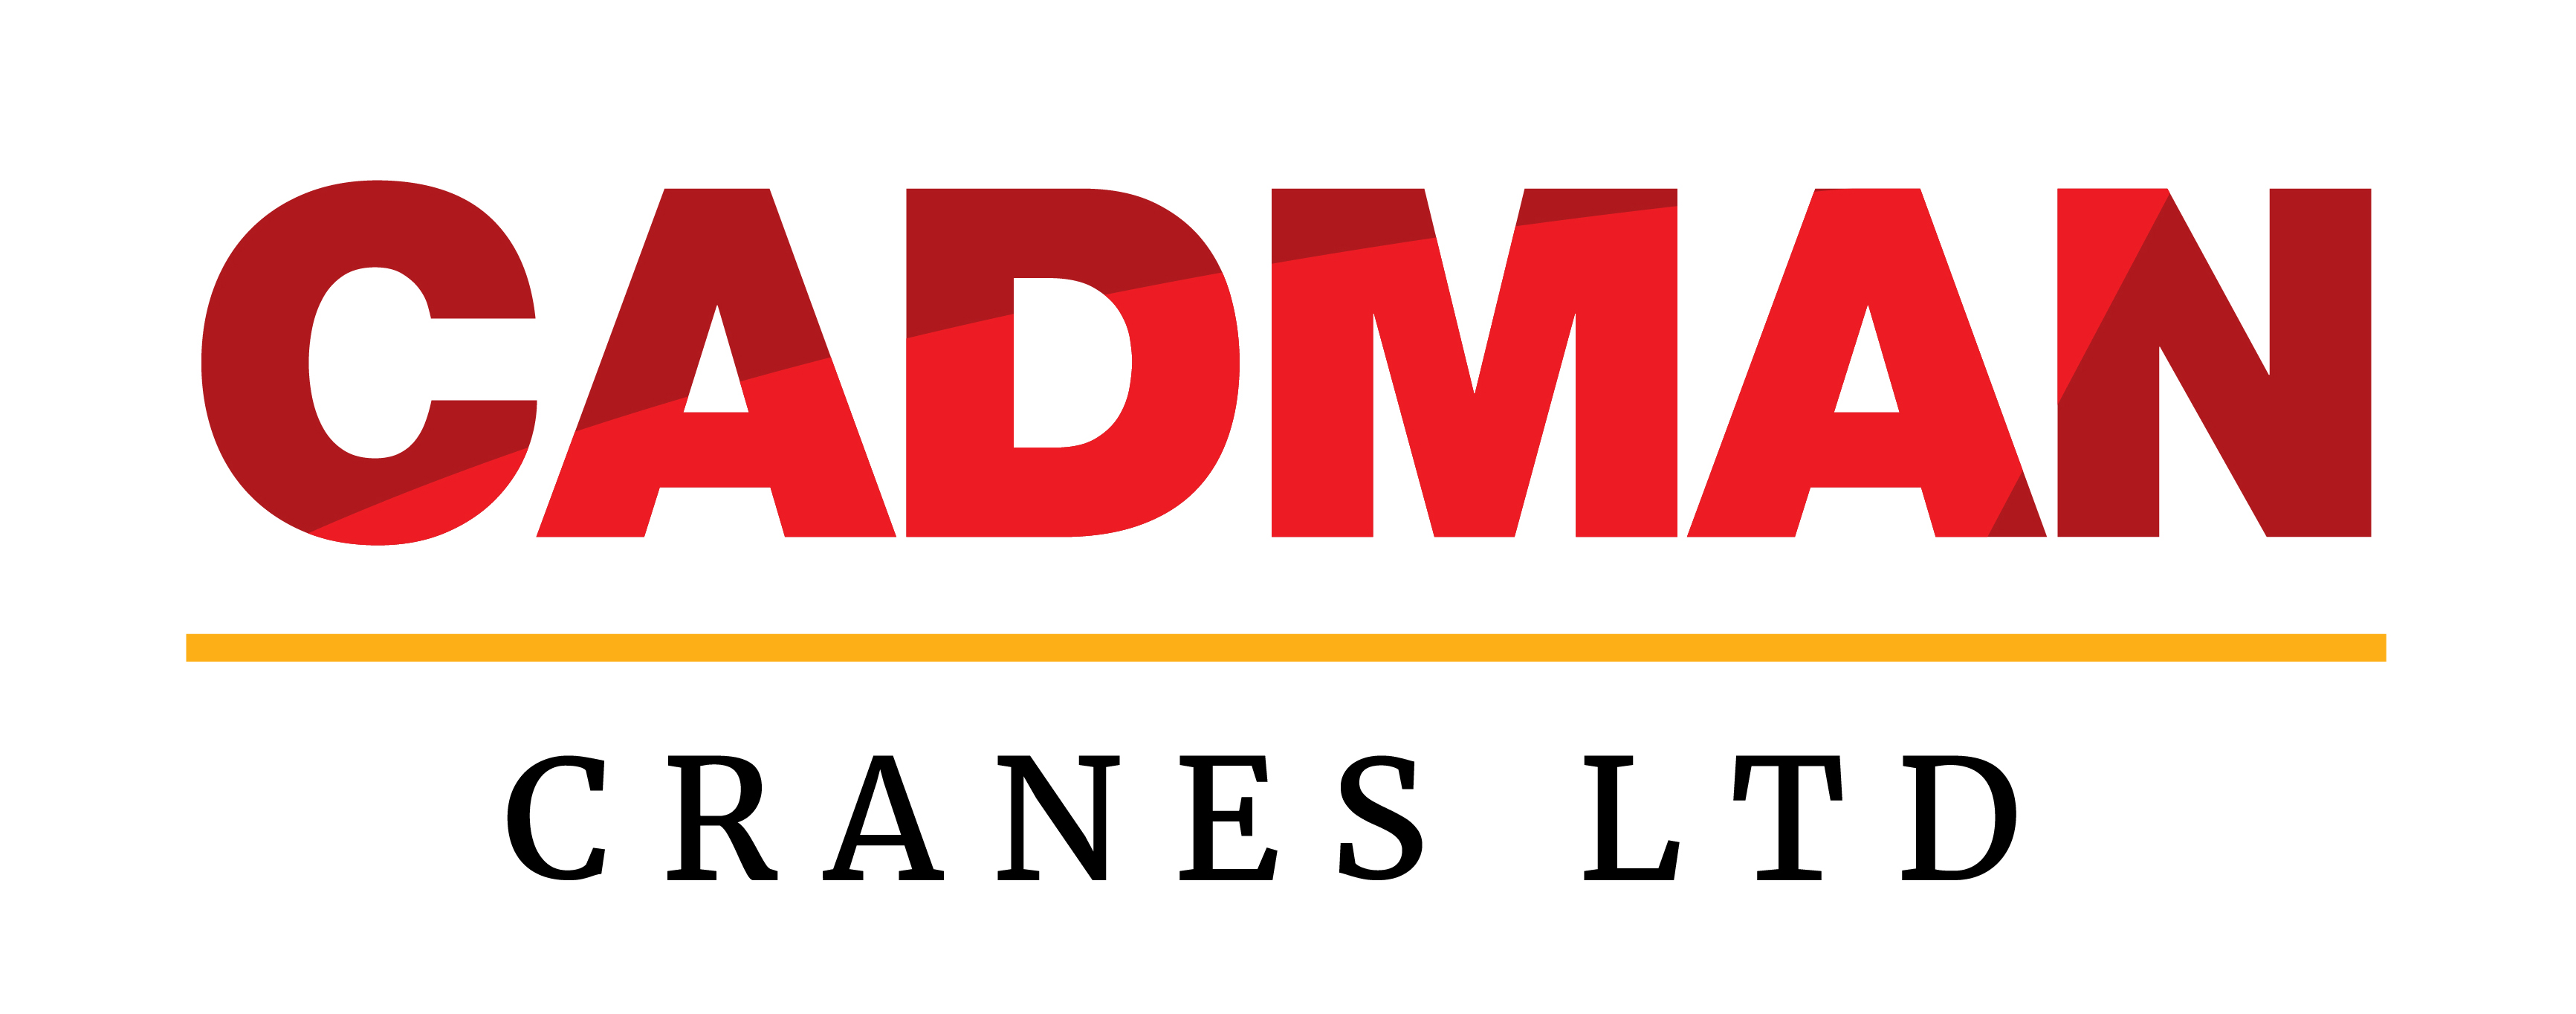 Cadman Cranes Ltd